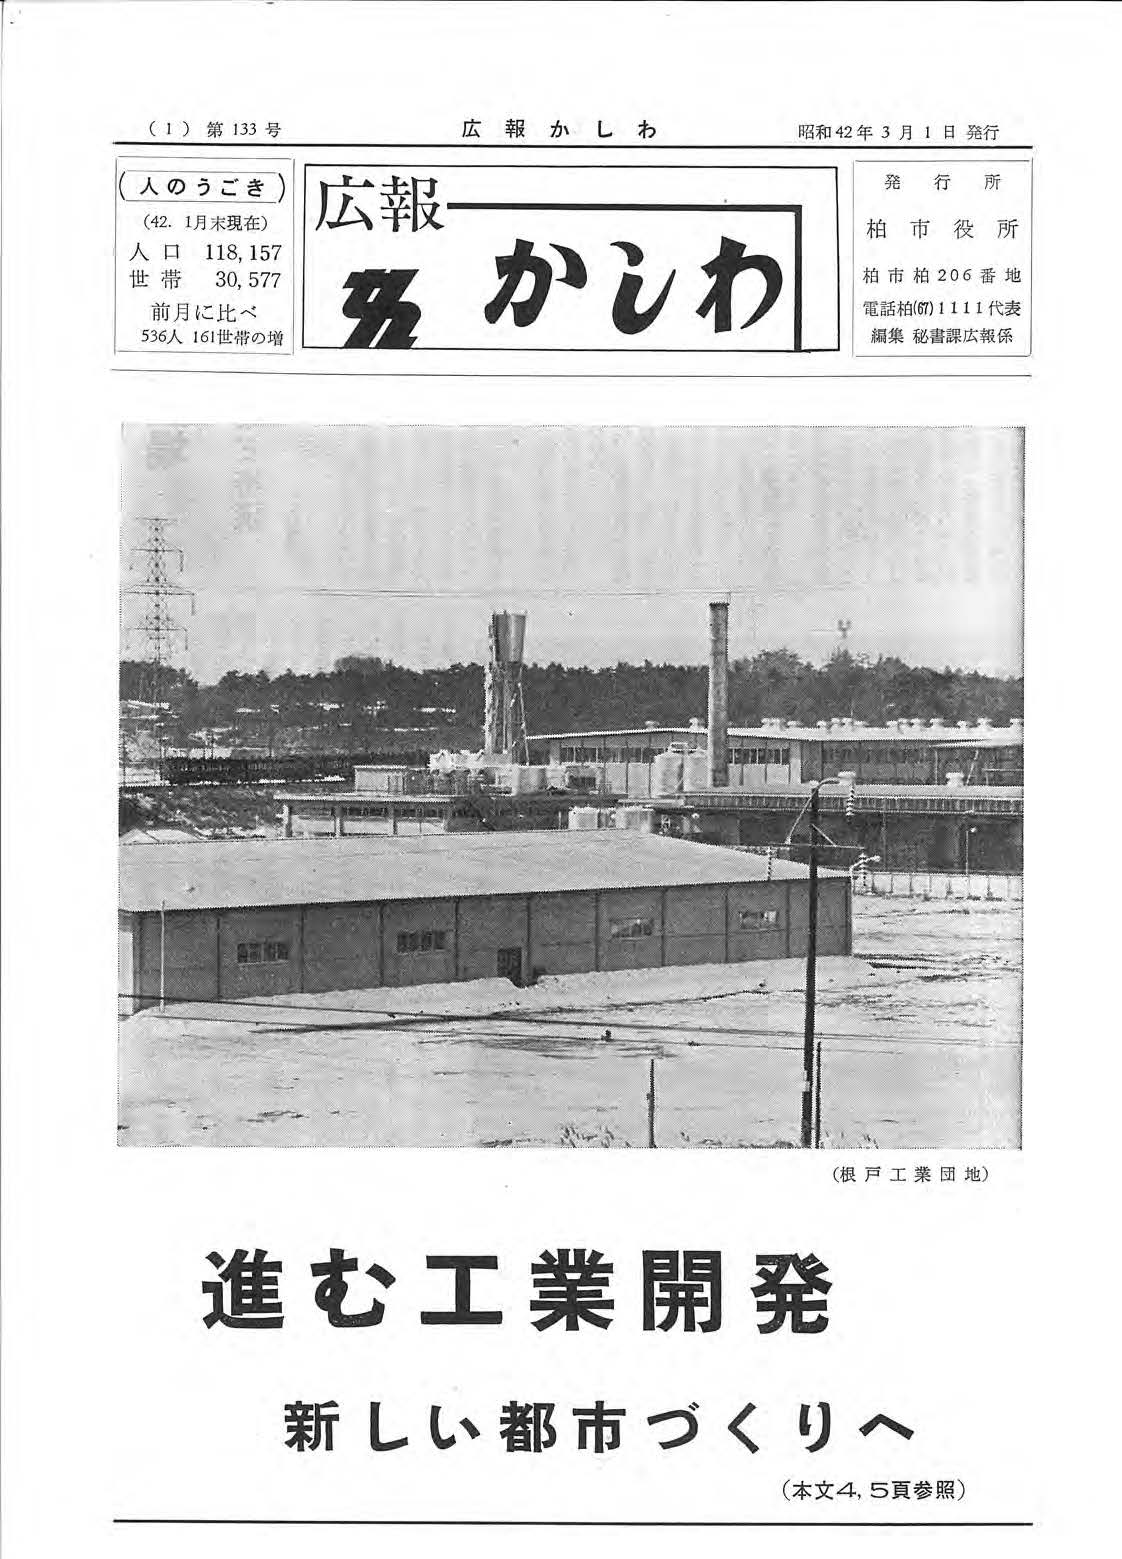 広報かしわ　昭和42年3月1日発行　133号